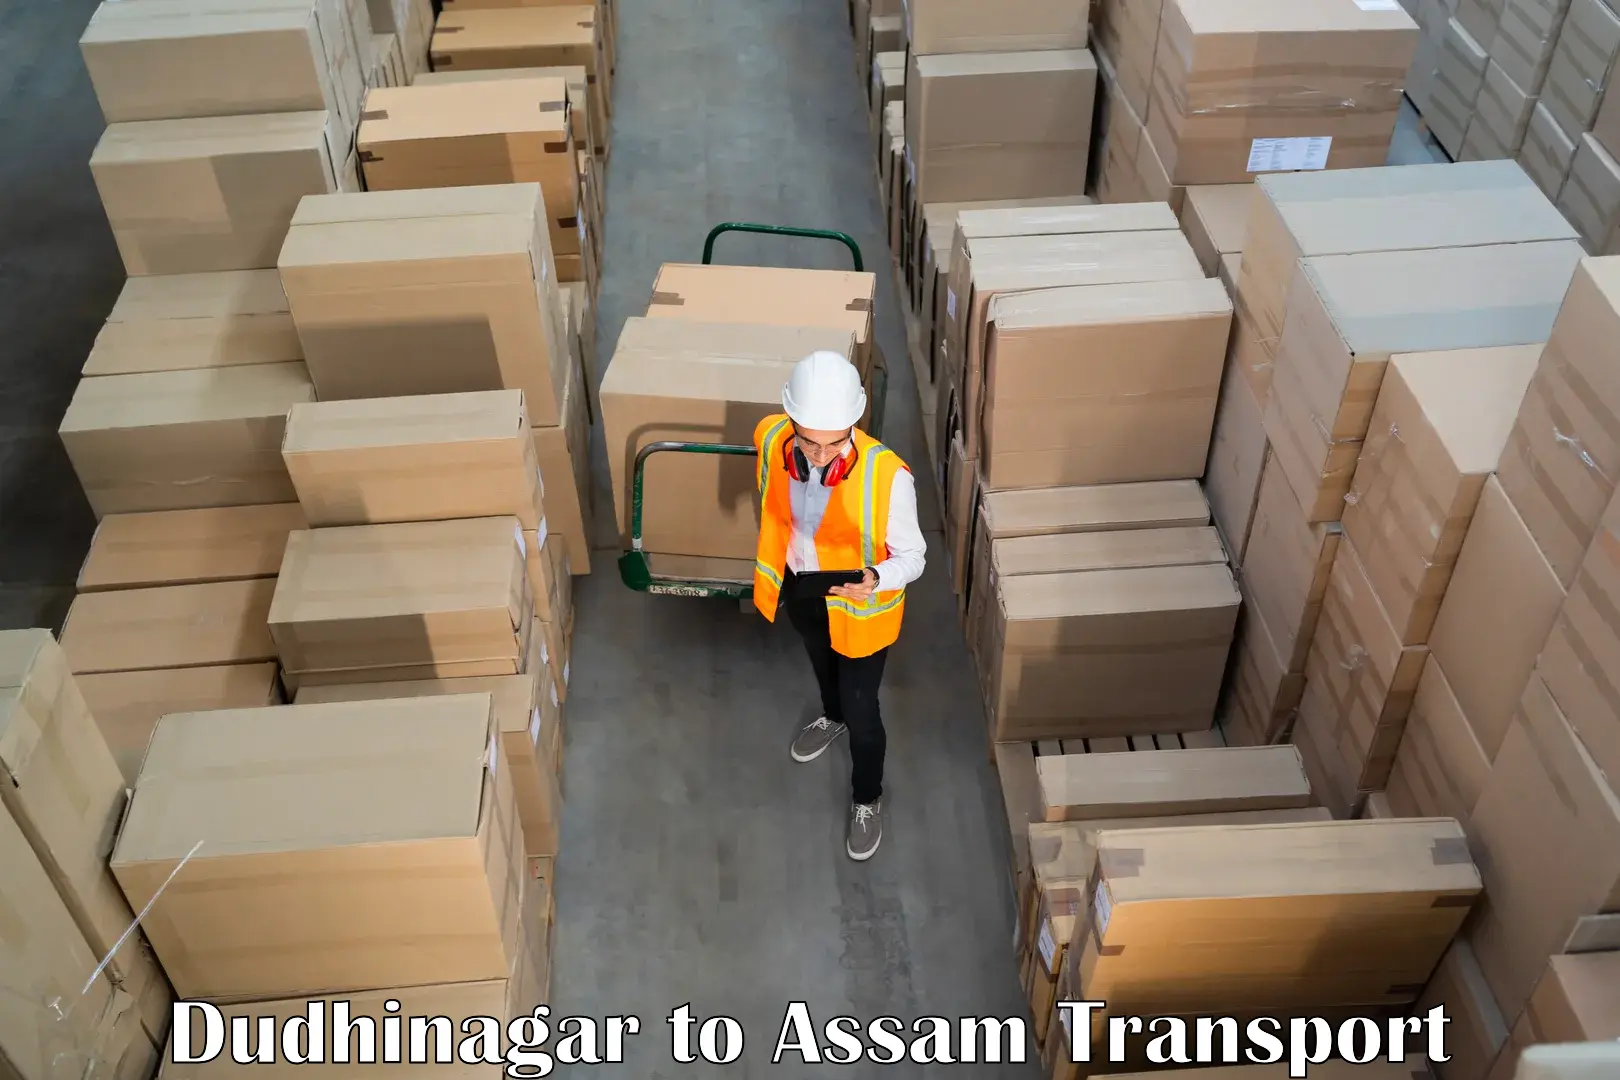 Goods transport services Dudhinagar to Behali